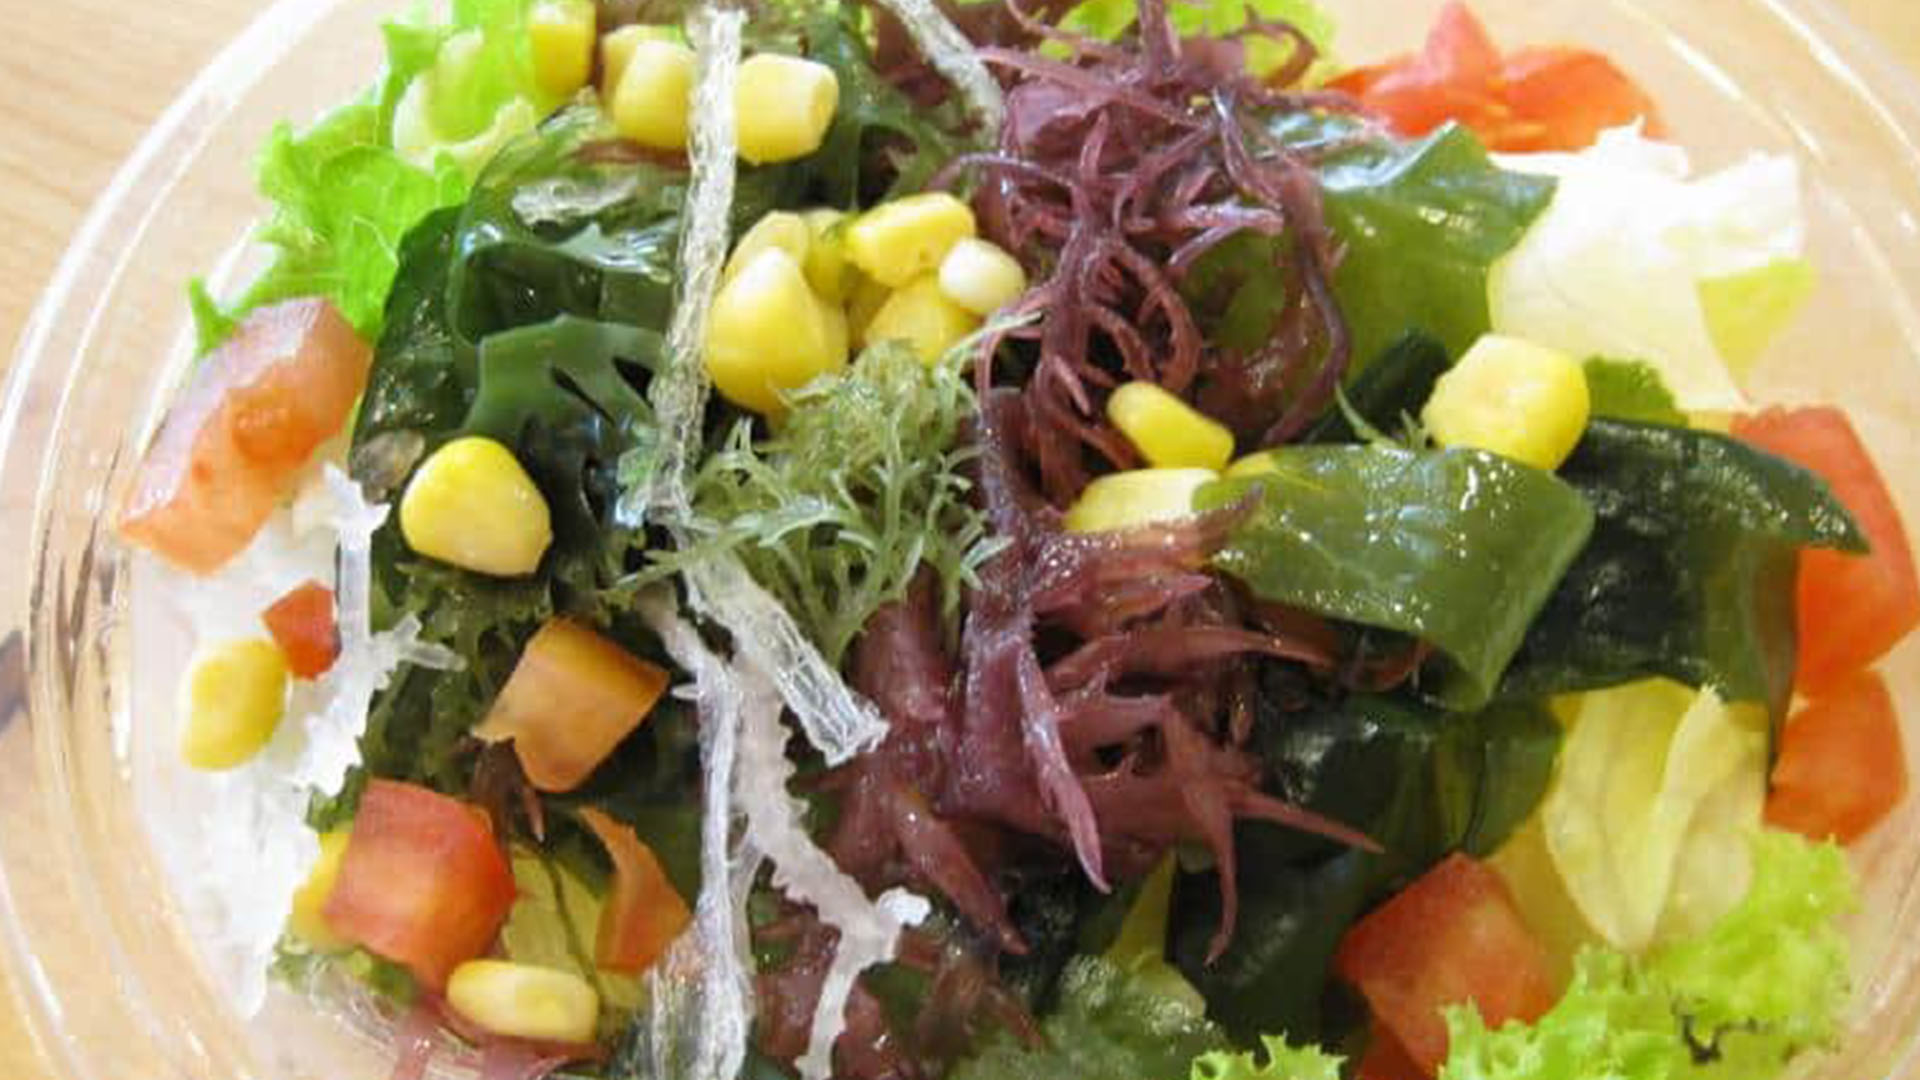 seaweed salad featured